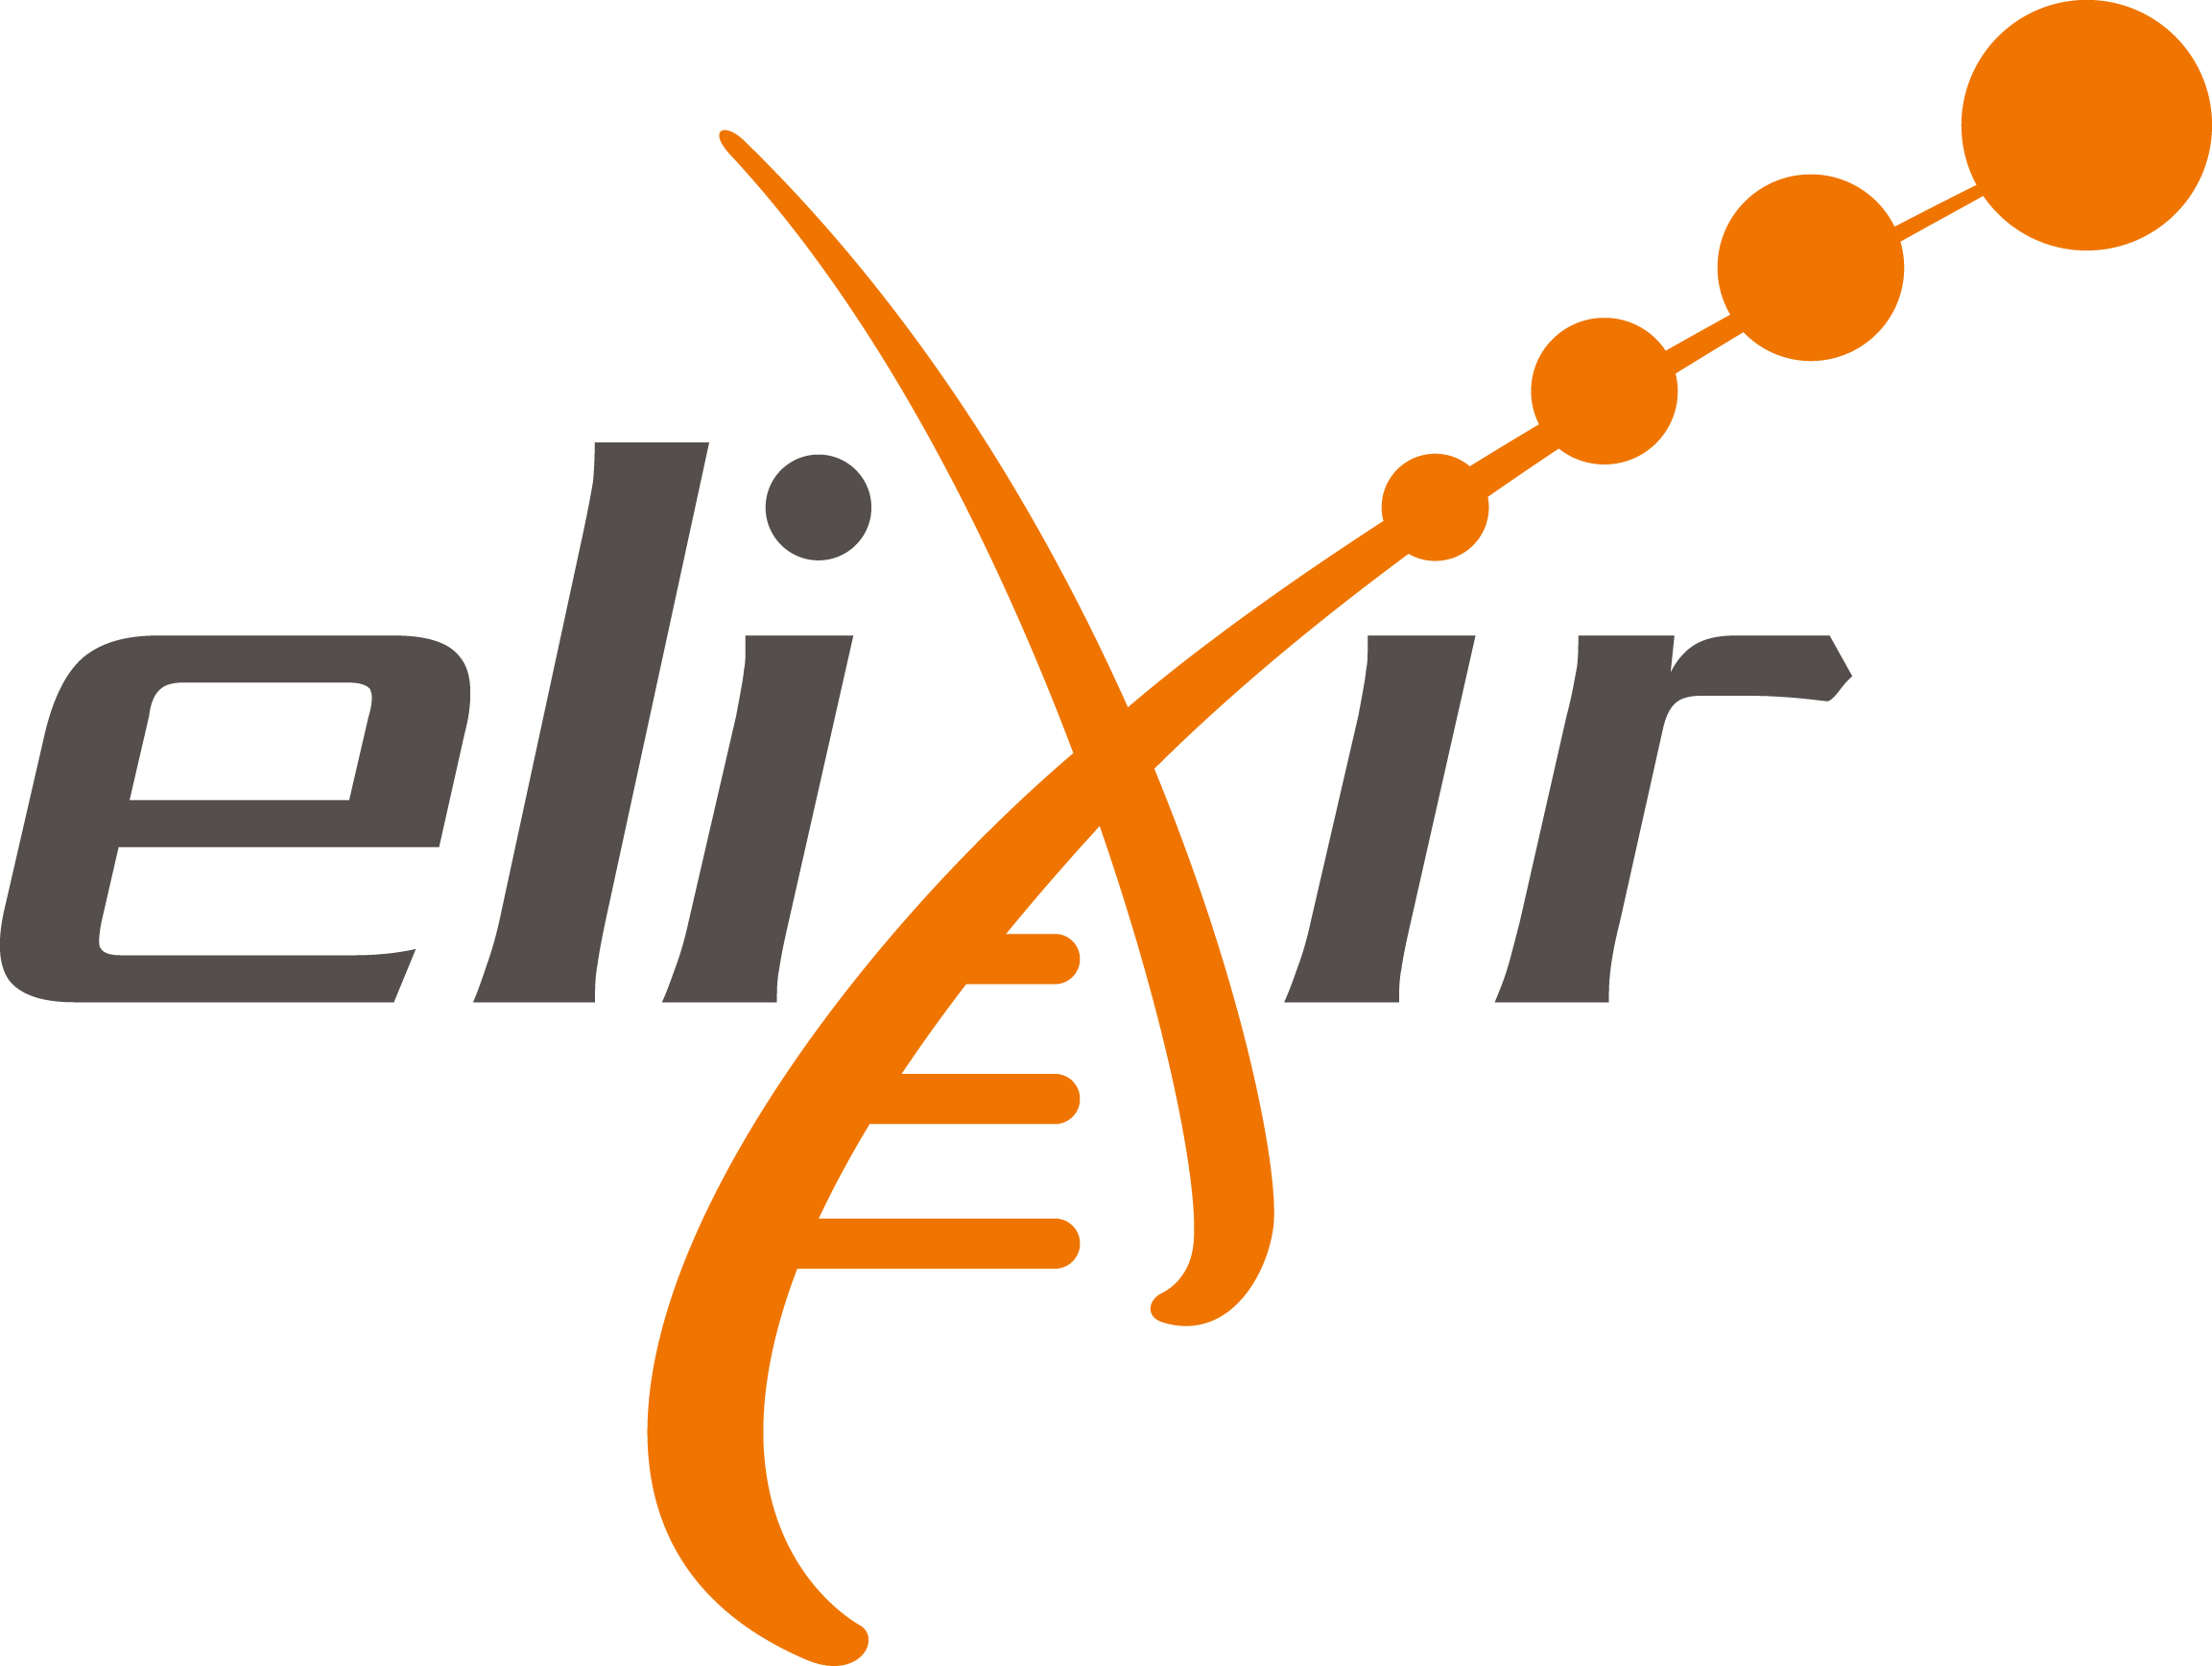 Elixir-Europe-logo-1.png